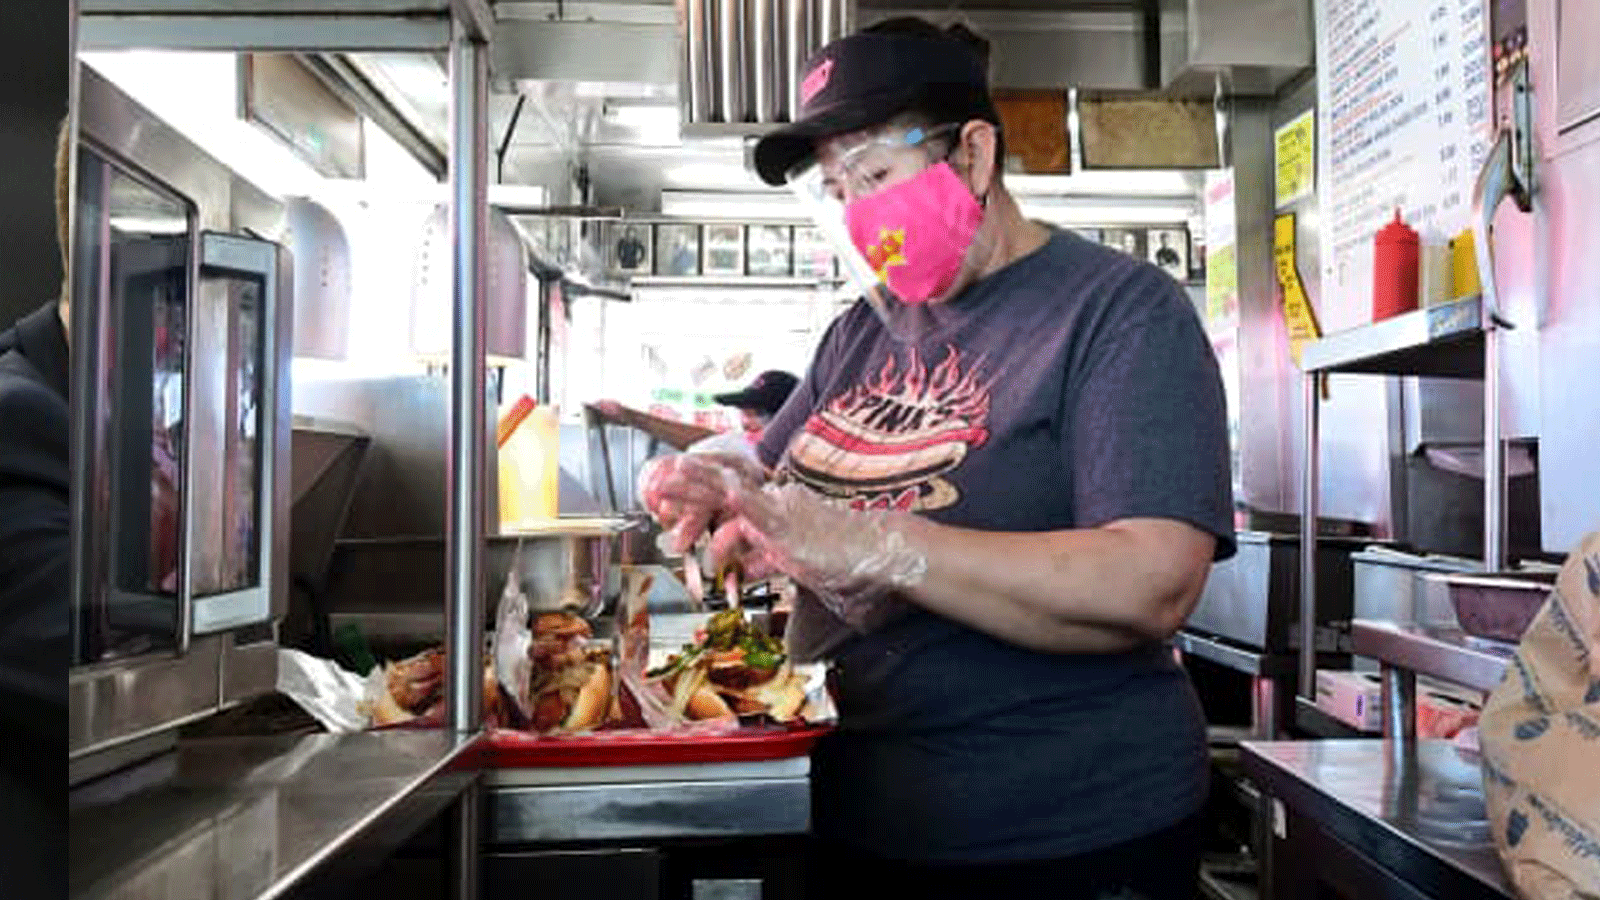 عمال المطعم يرتدون أقنعة الوجه والقفازات بعد إعادة افتتاح مطعم Pink’s Hot Dogs في لوس أنجلوس في 1 آذار/مارس 2021 في لوس أنجلوس، كاليفورنيا.